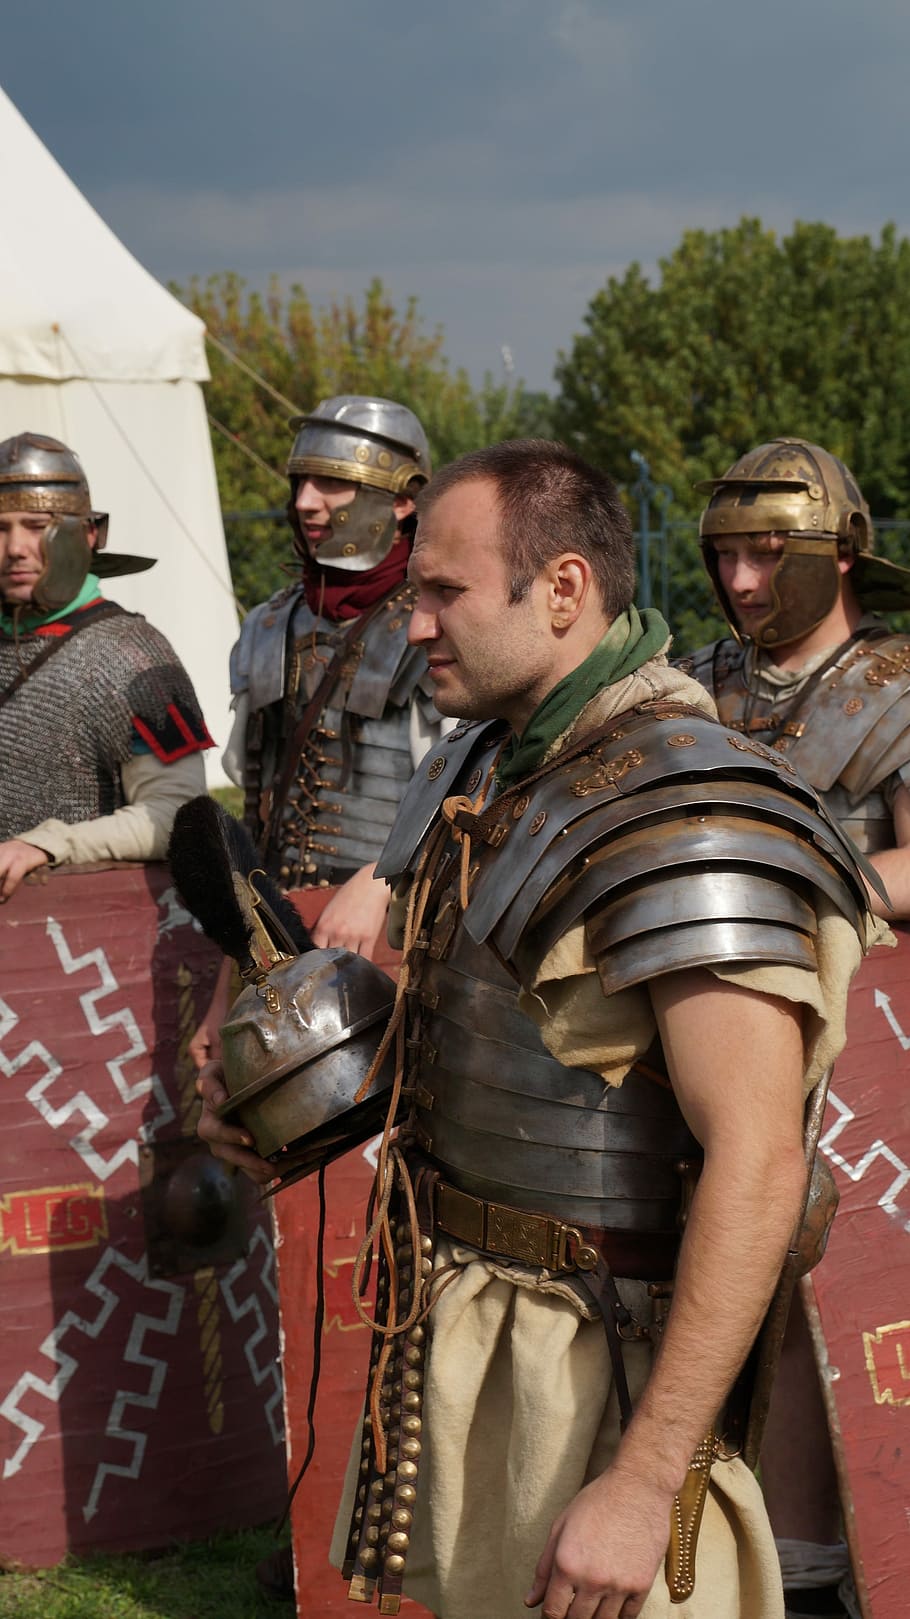 Romanos, hombre, persona, luchador, legionarios romanos, reconstrucción histórica, eventos históricos, casco, de pie, unión